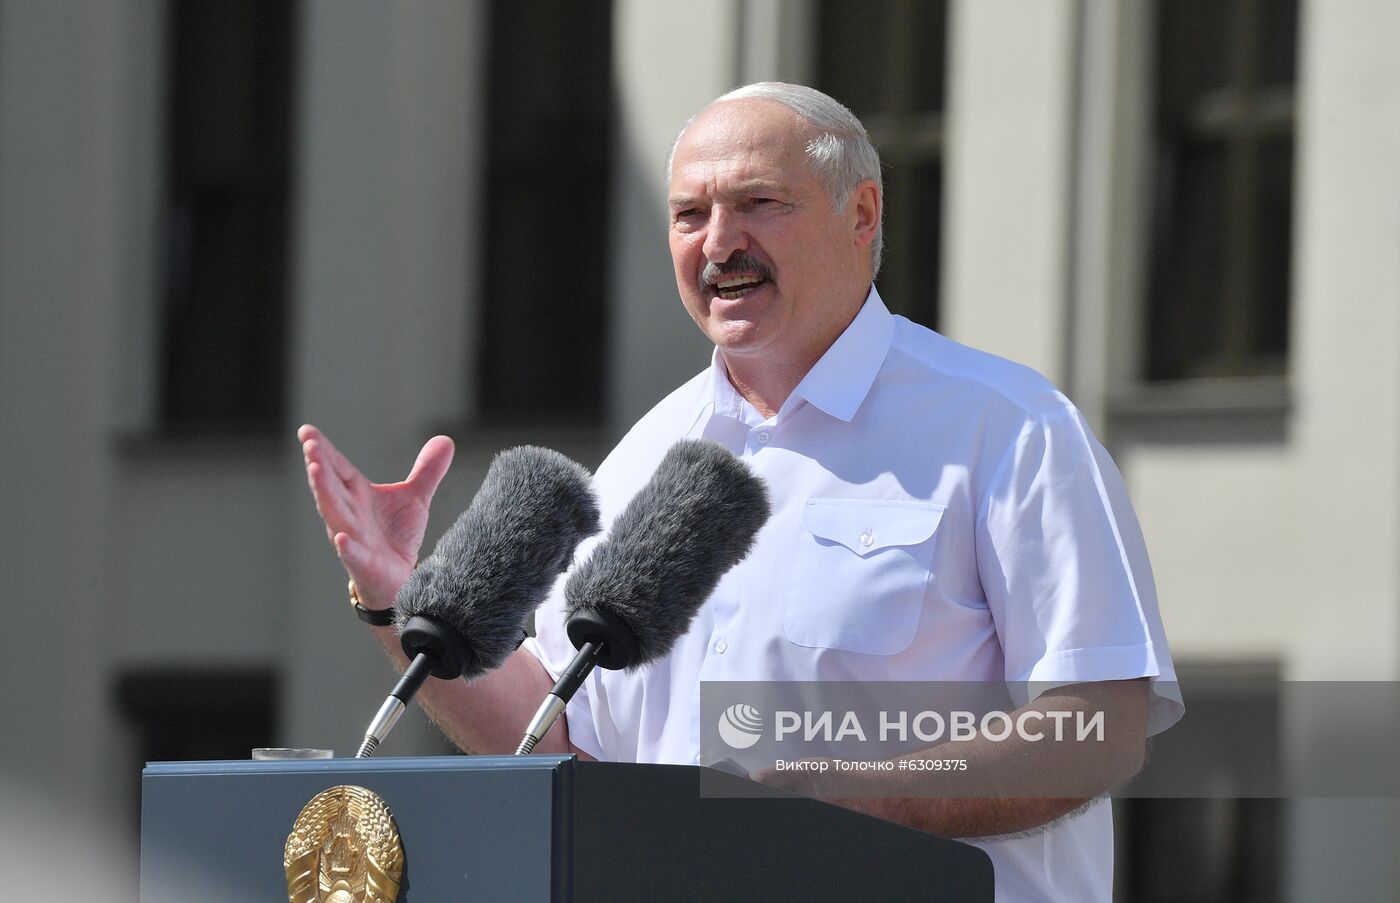 Митинг в поддержку действующего президента Белоруссии А. Лукашенко в Минске